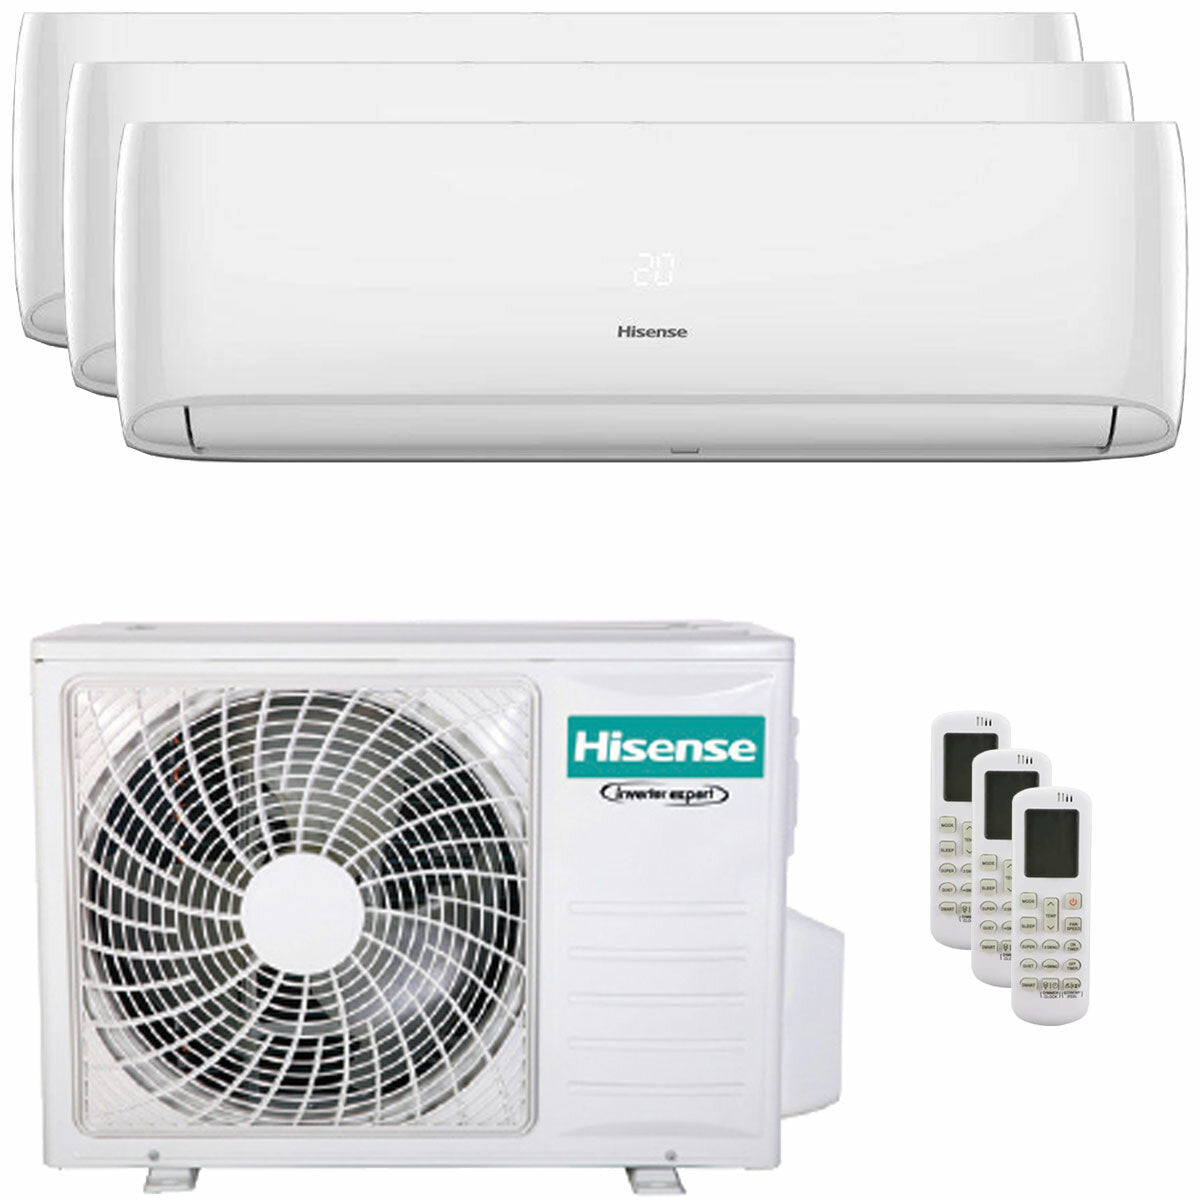 Hisense Hi-Comfort trial climatiseur split 9000+12000+12000 BTU onduleur A++ wifi unité extérieure 7.0 kW